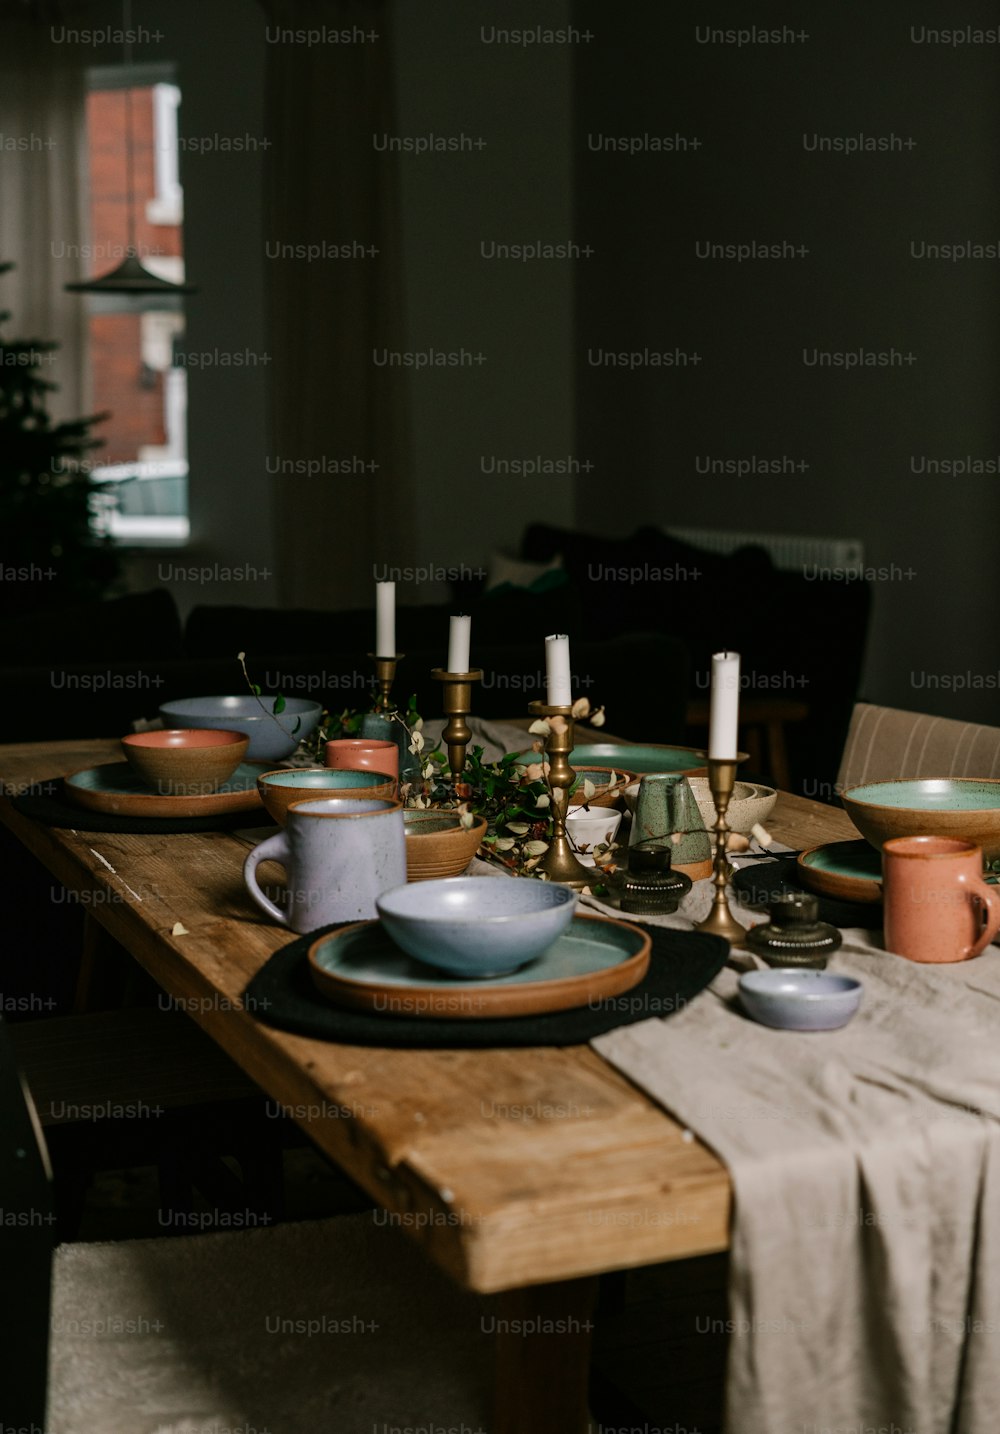 皿とカップで覆われた木製のテーブル